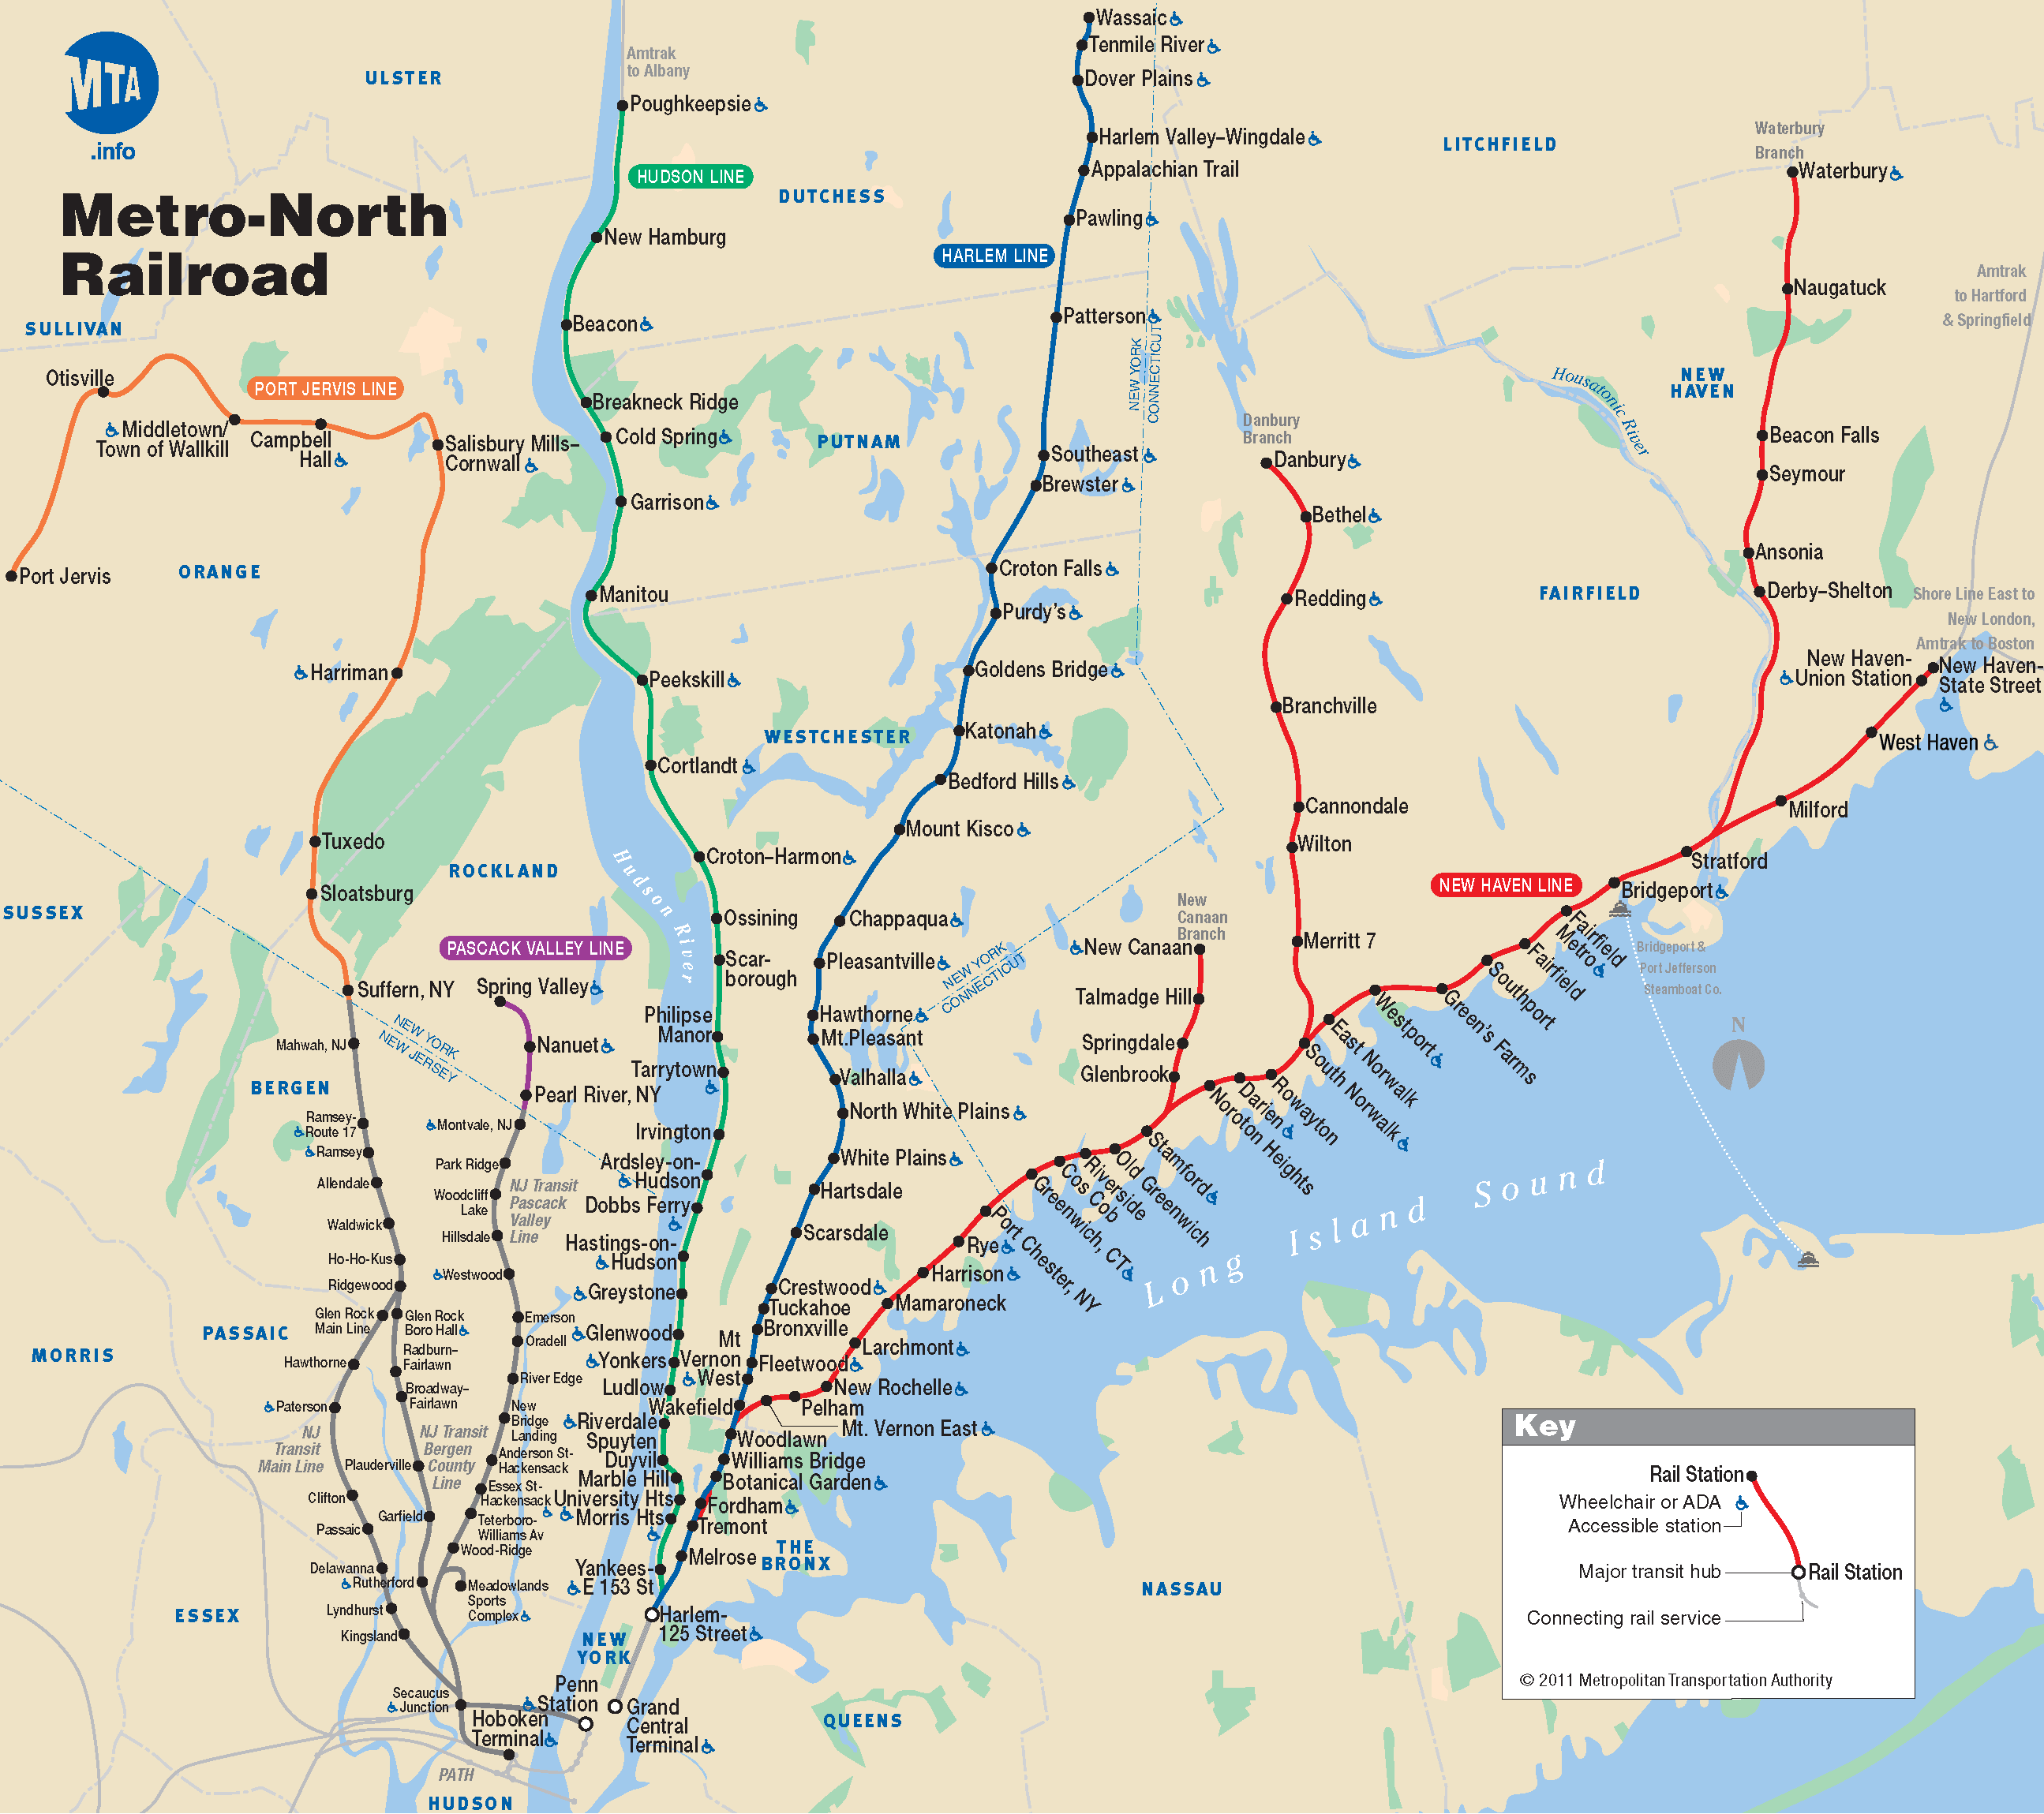 Metro-North Railroad (MNR) Map